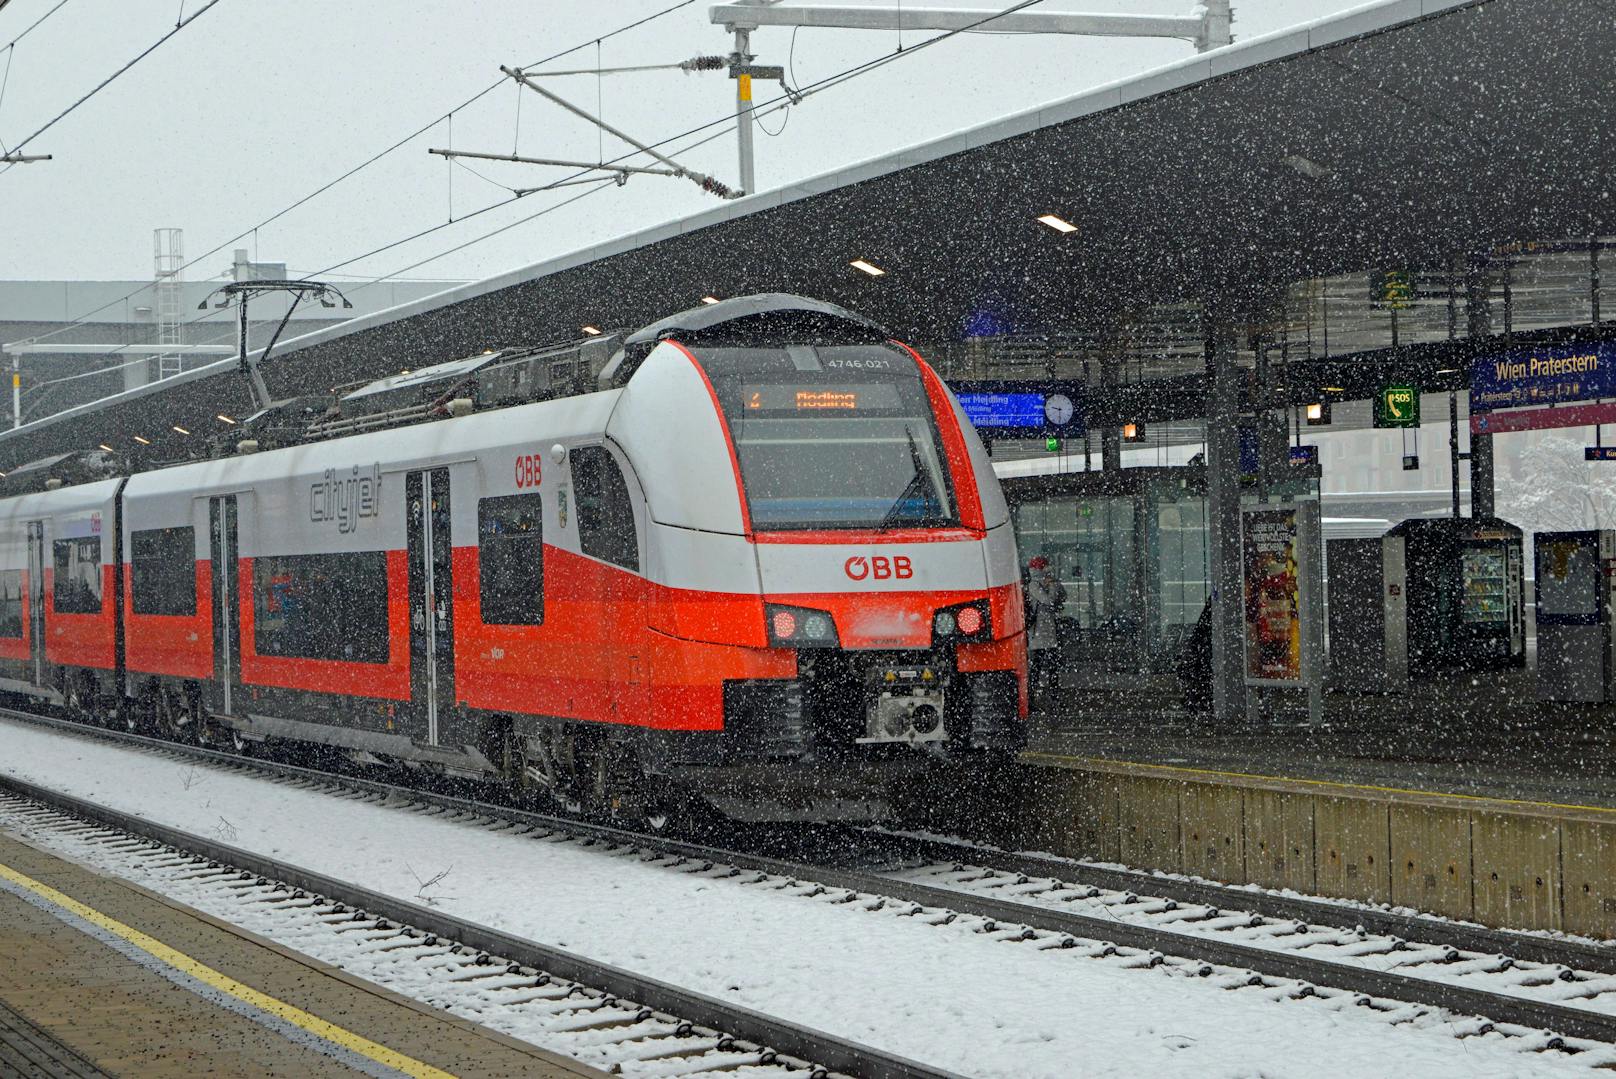 Am Dienstagvormittag ging nichts mehr bei den ÖBB in Linz. Eine Oberleitungsstörung legte den Zugverkehr lahm.